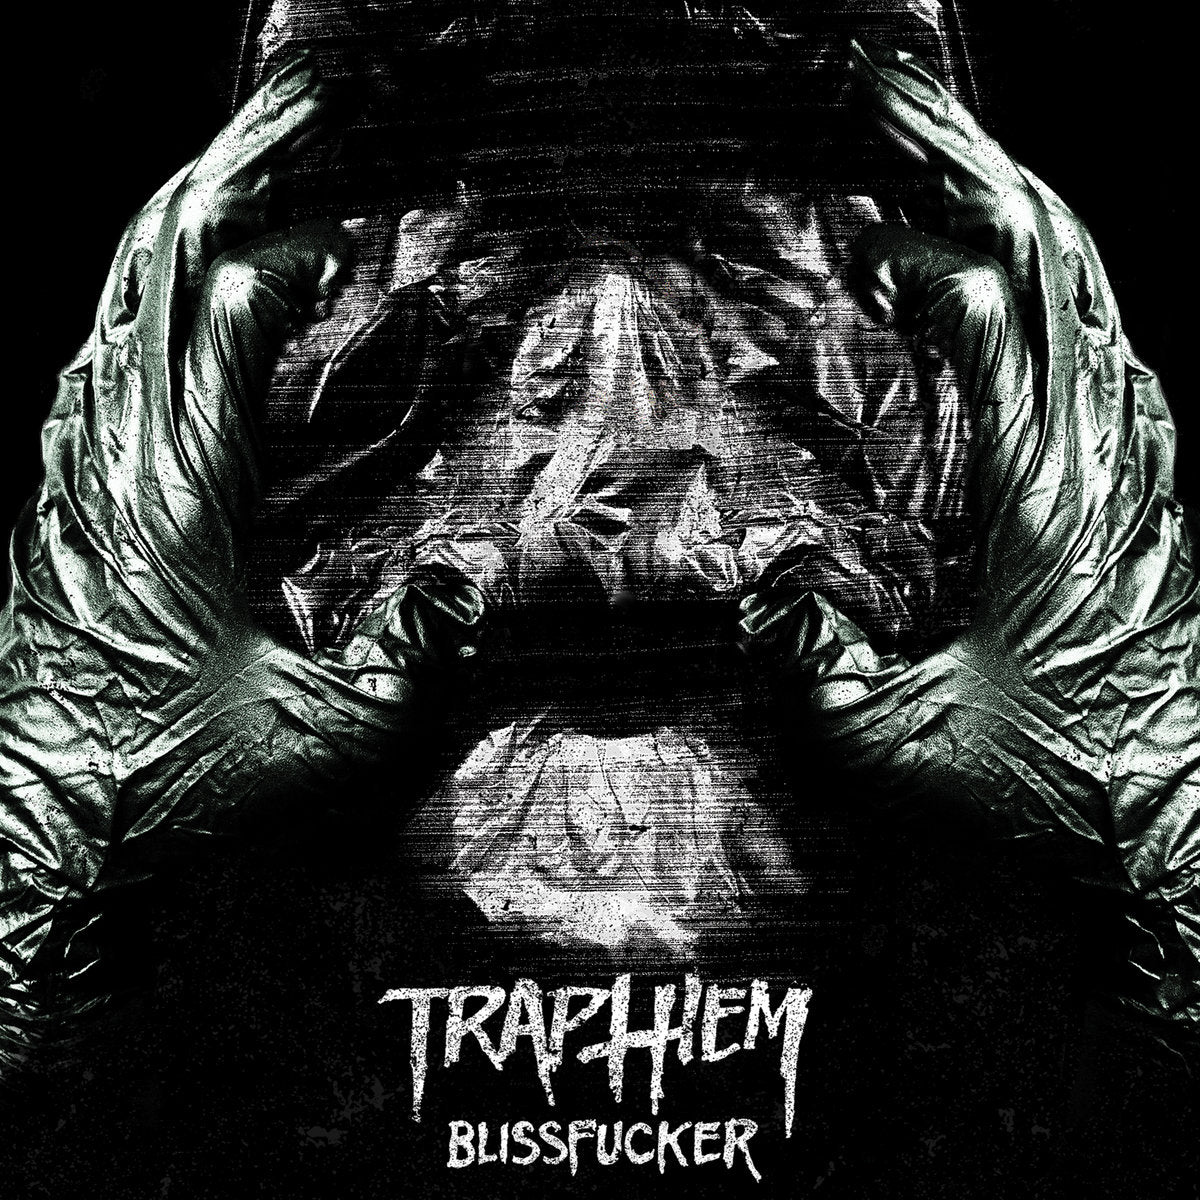 Trap Them "Blissfucker" CD